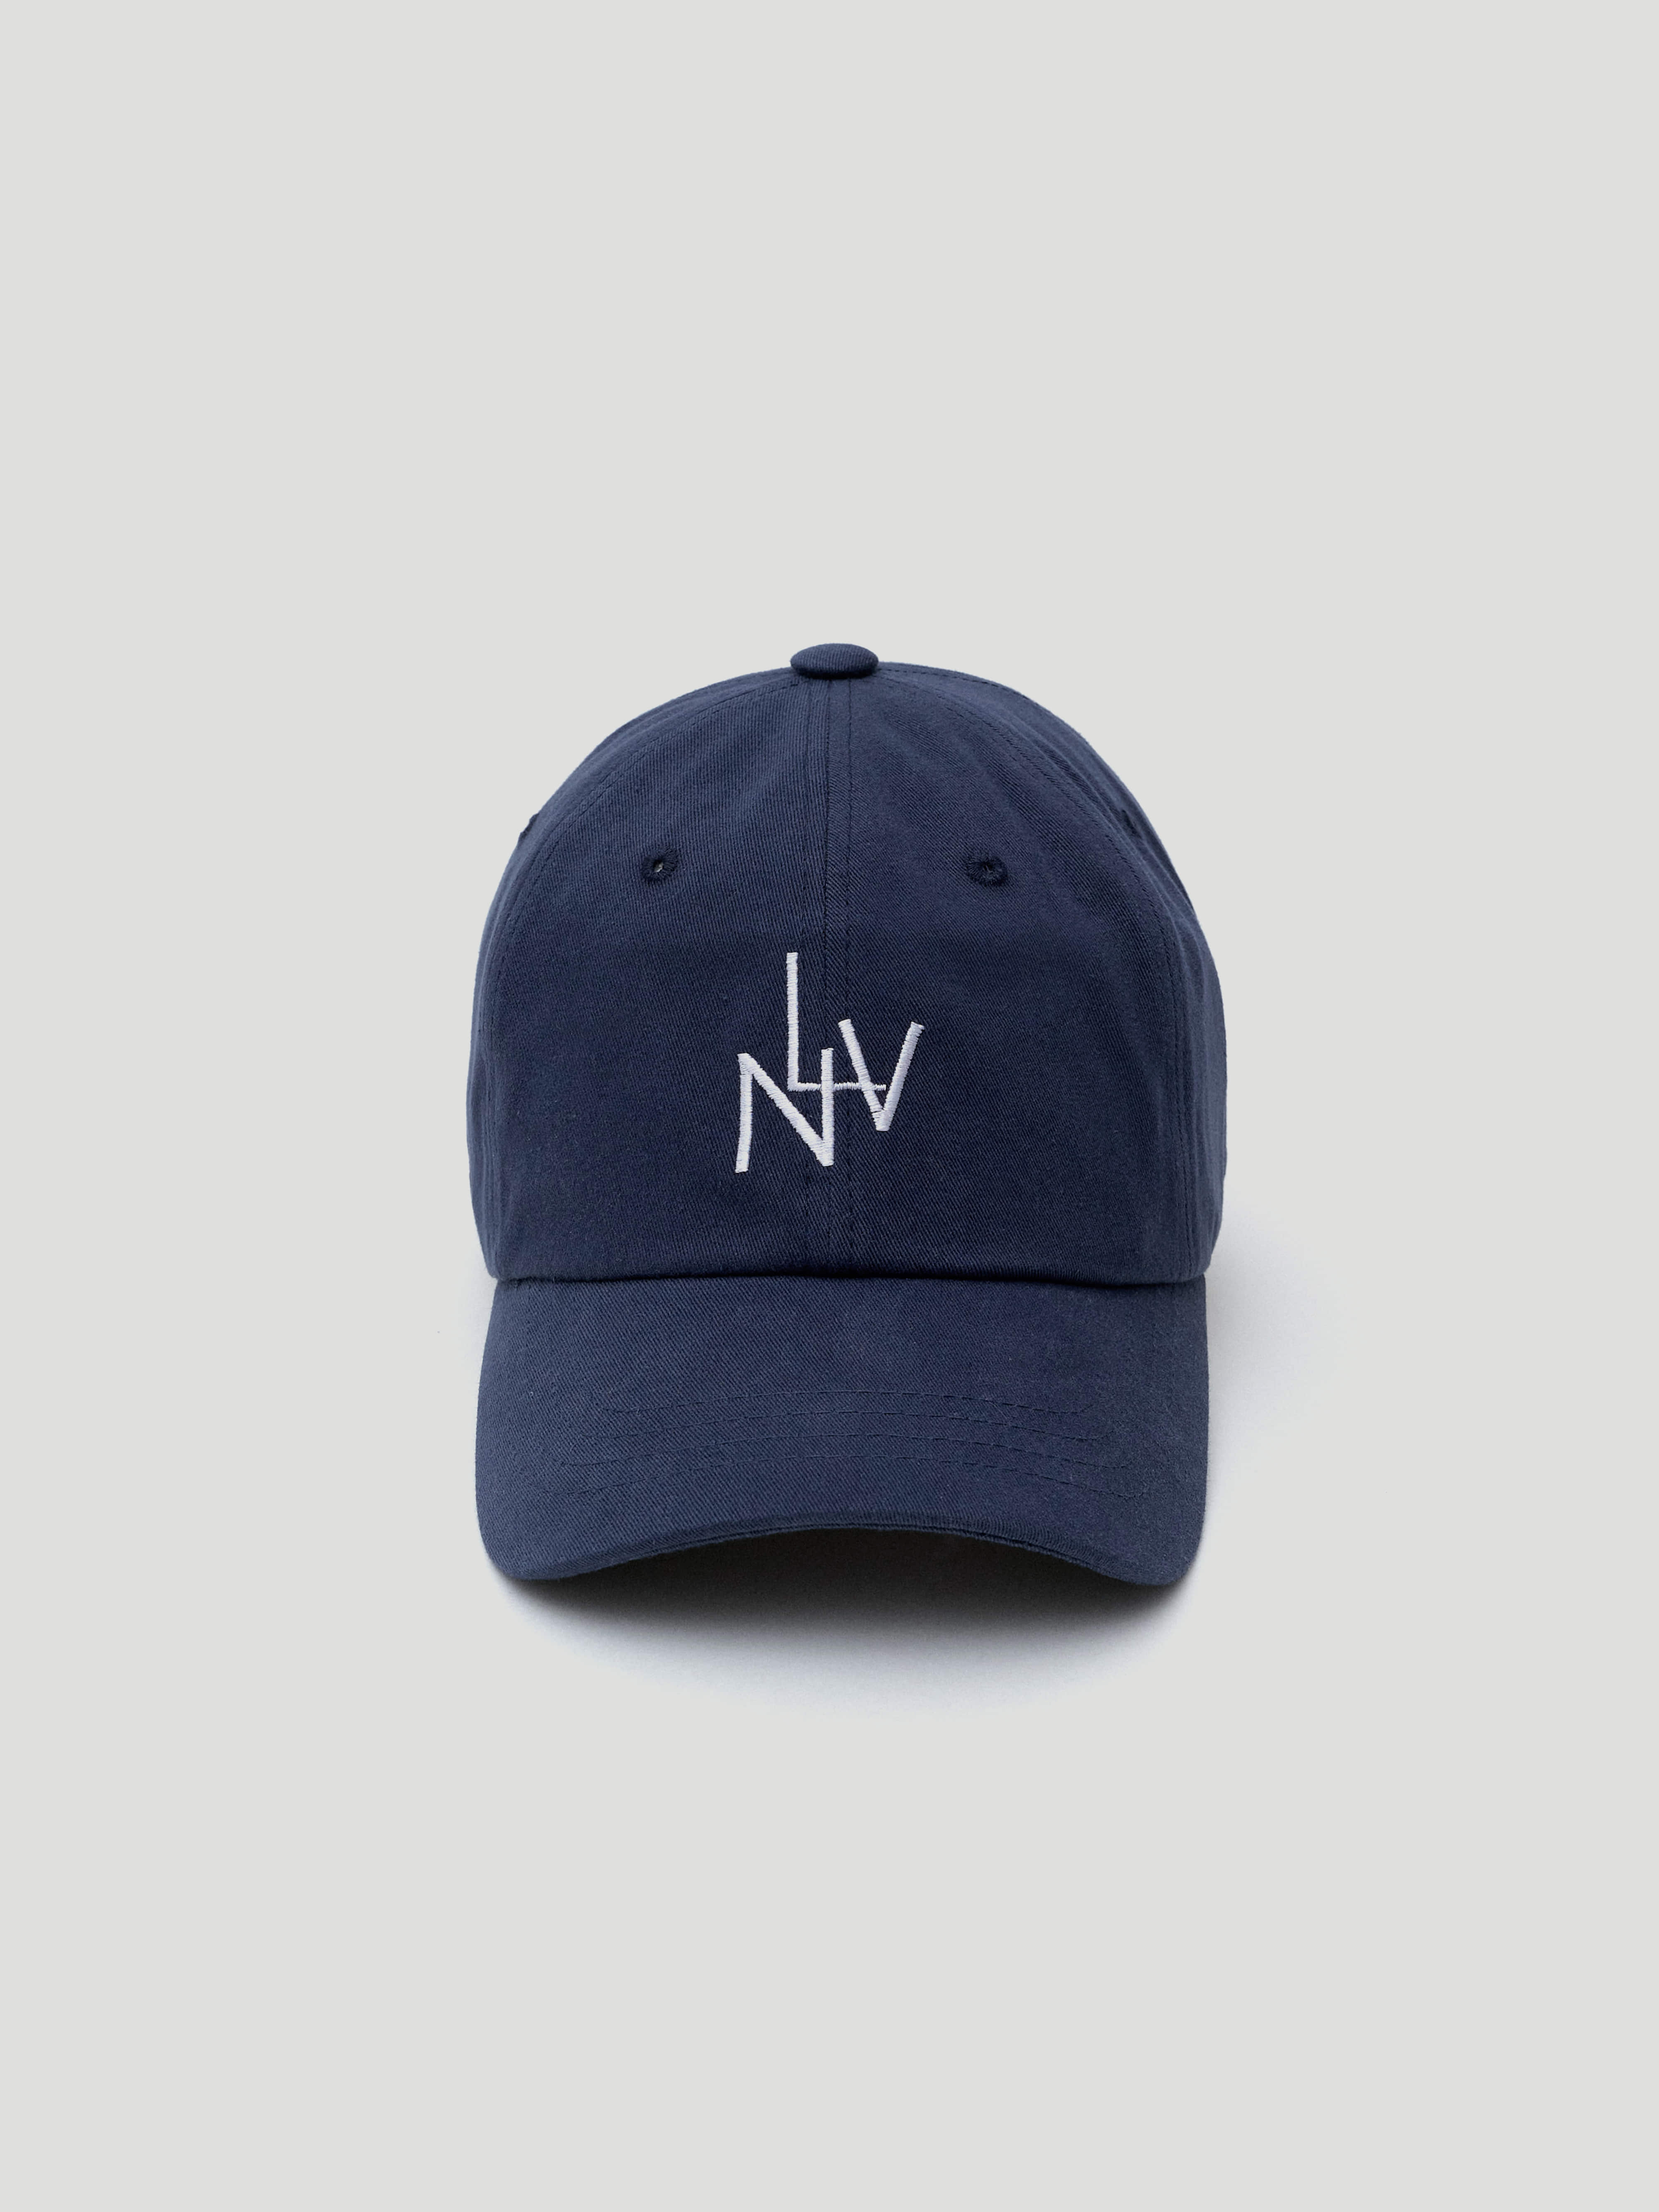 LNV Navy Ball cap (네이비)